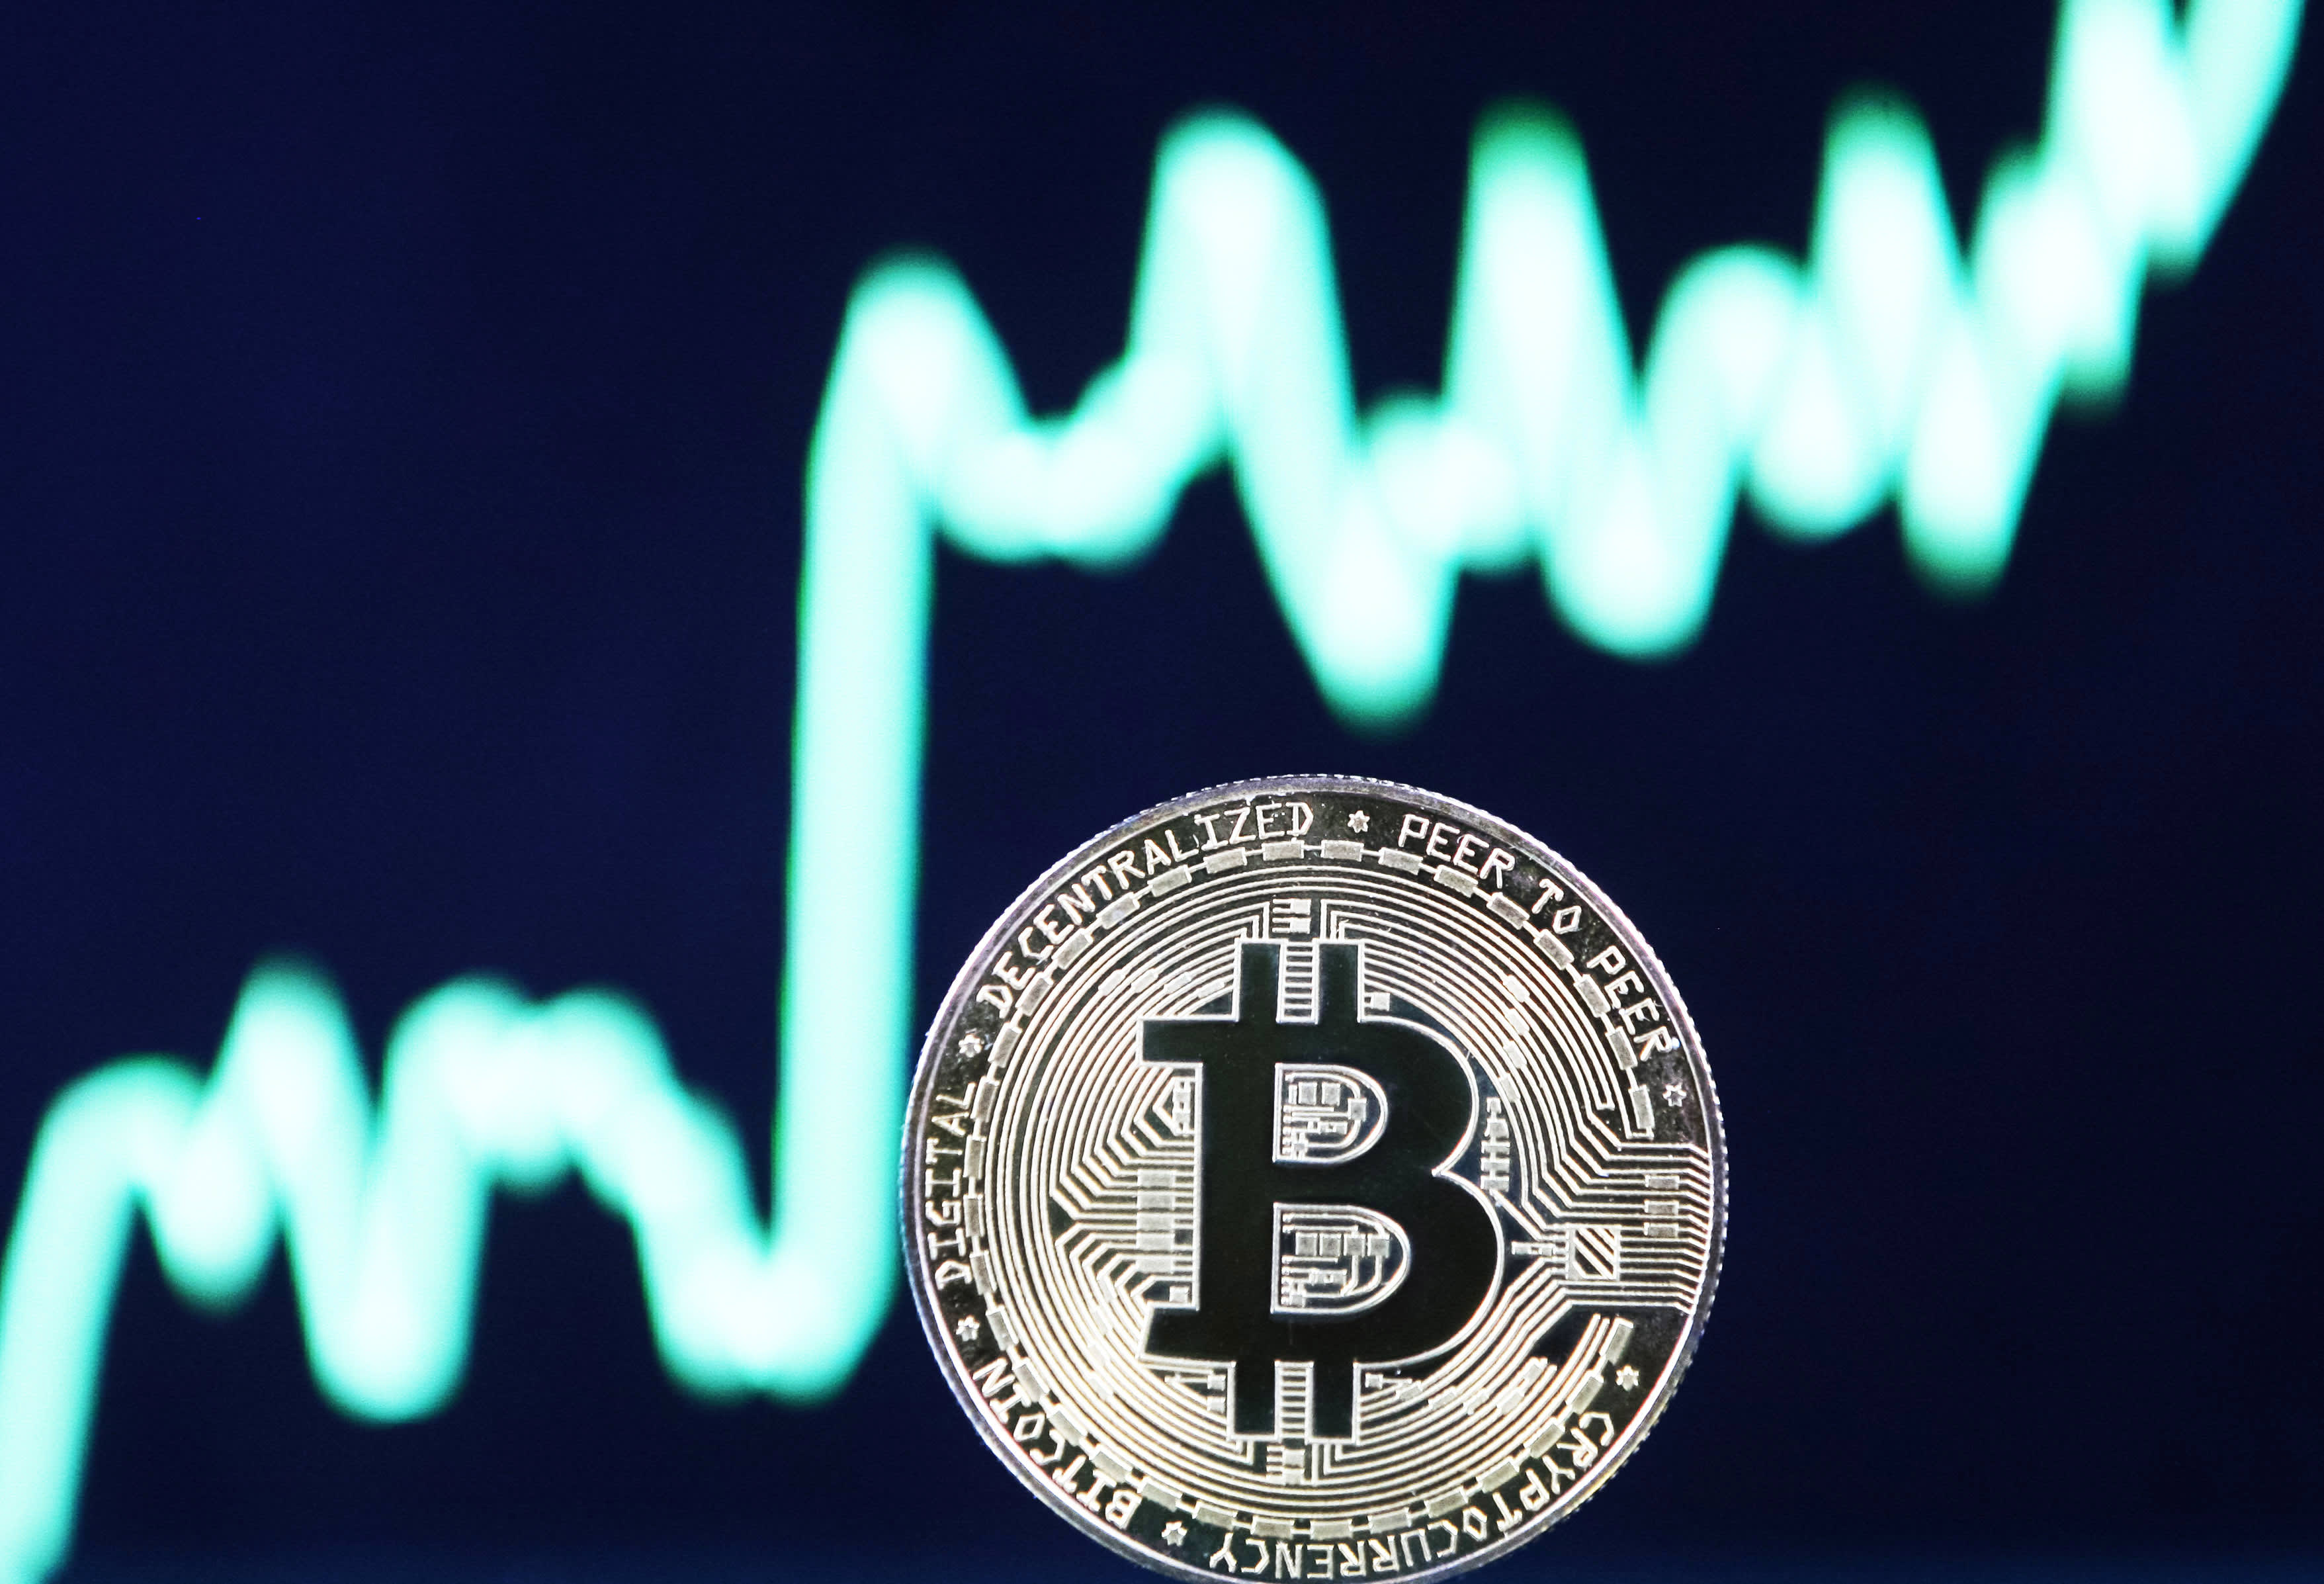 ເດືອນມັງກອນເປັນເດືອນທີ່ດີທີ່ສຸດຂອງ bitcoin ນັບຕັ້ງແຕ່ 2021, ແຕ່ crypto ຍັງບໍ່ພ້ອມສໍາລັບ 'ການຊຸມນຸມເຮືອຈະຫຼວດ' ເທື່ອ.